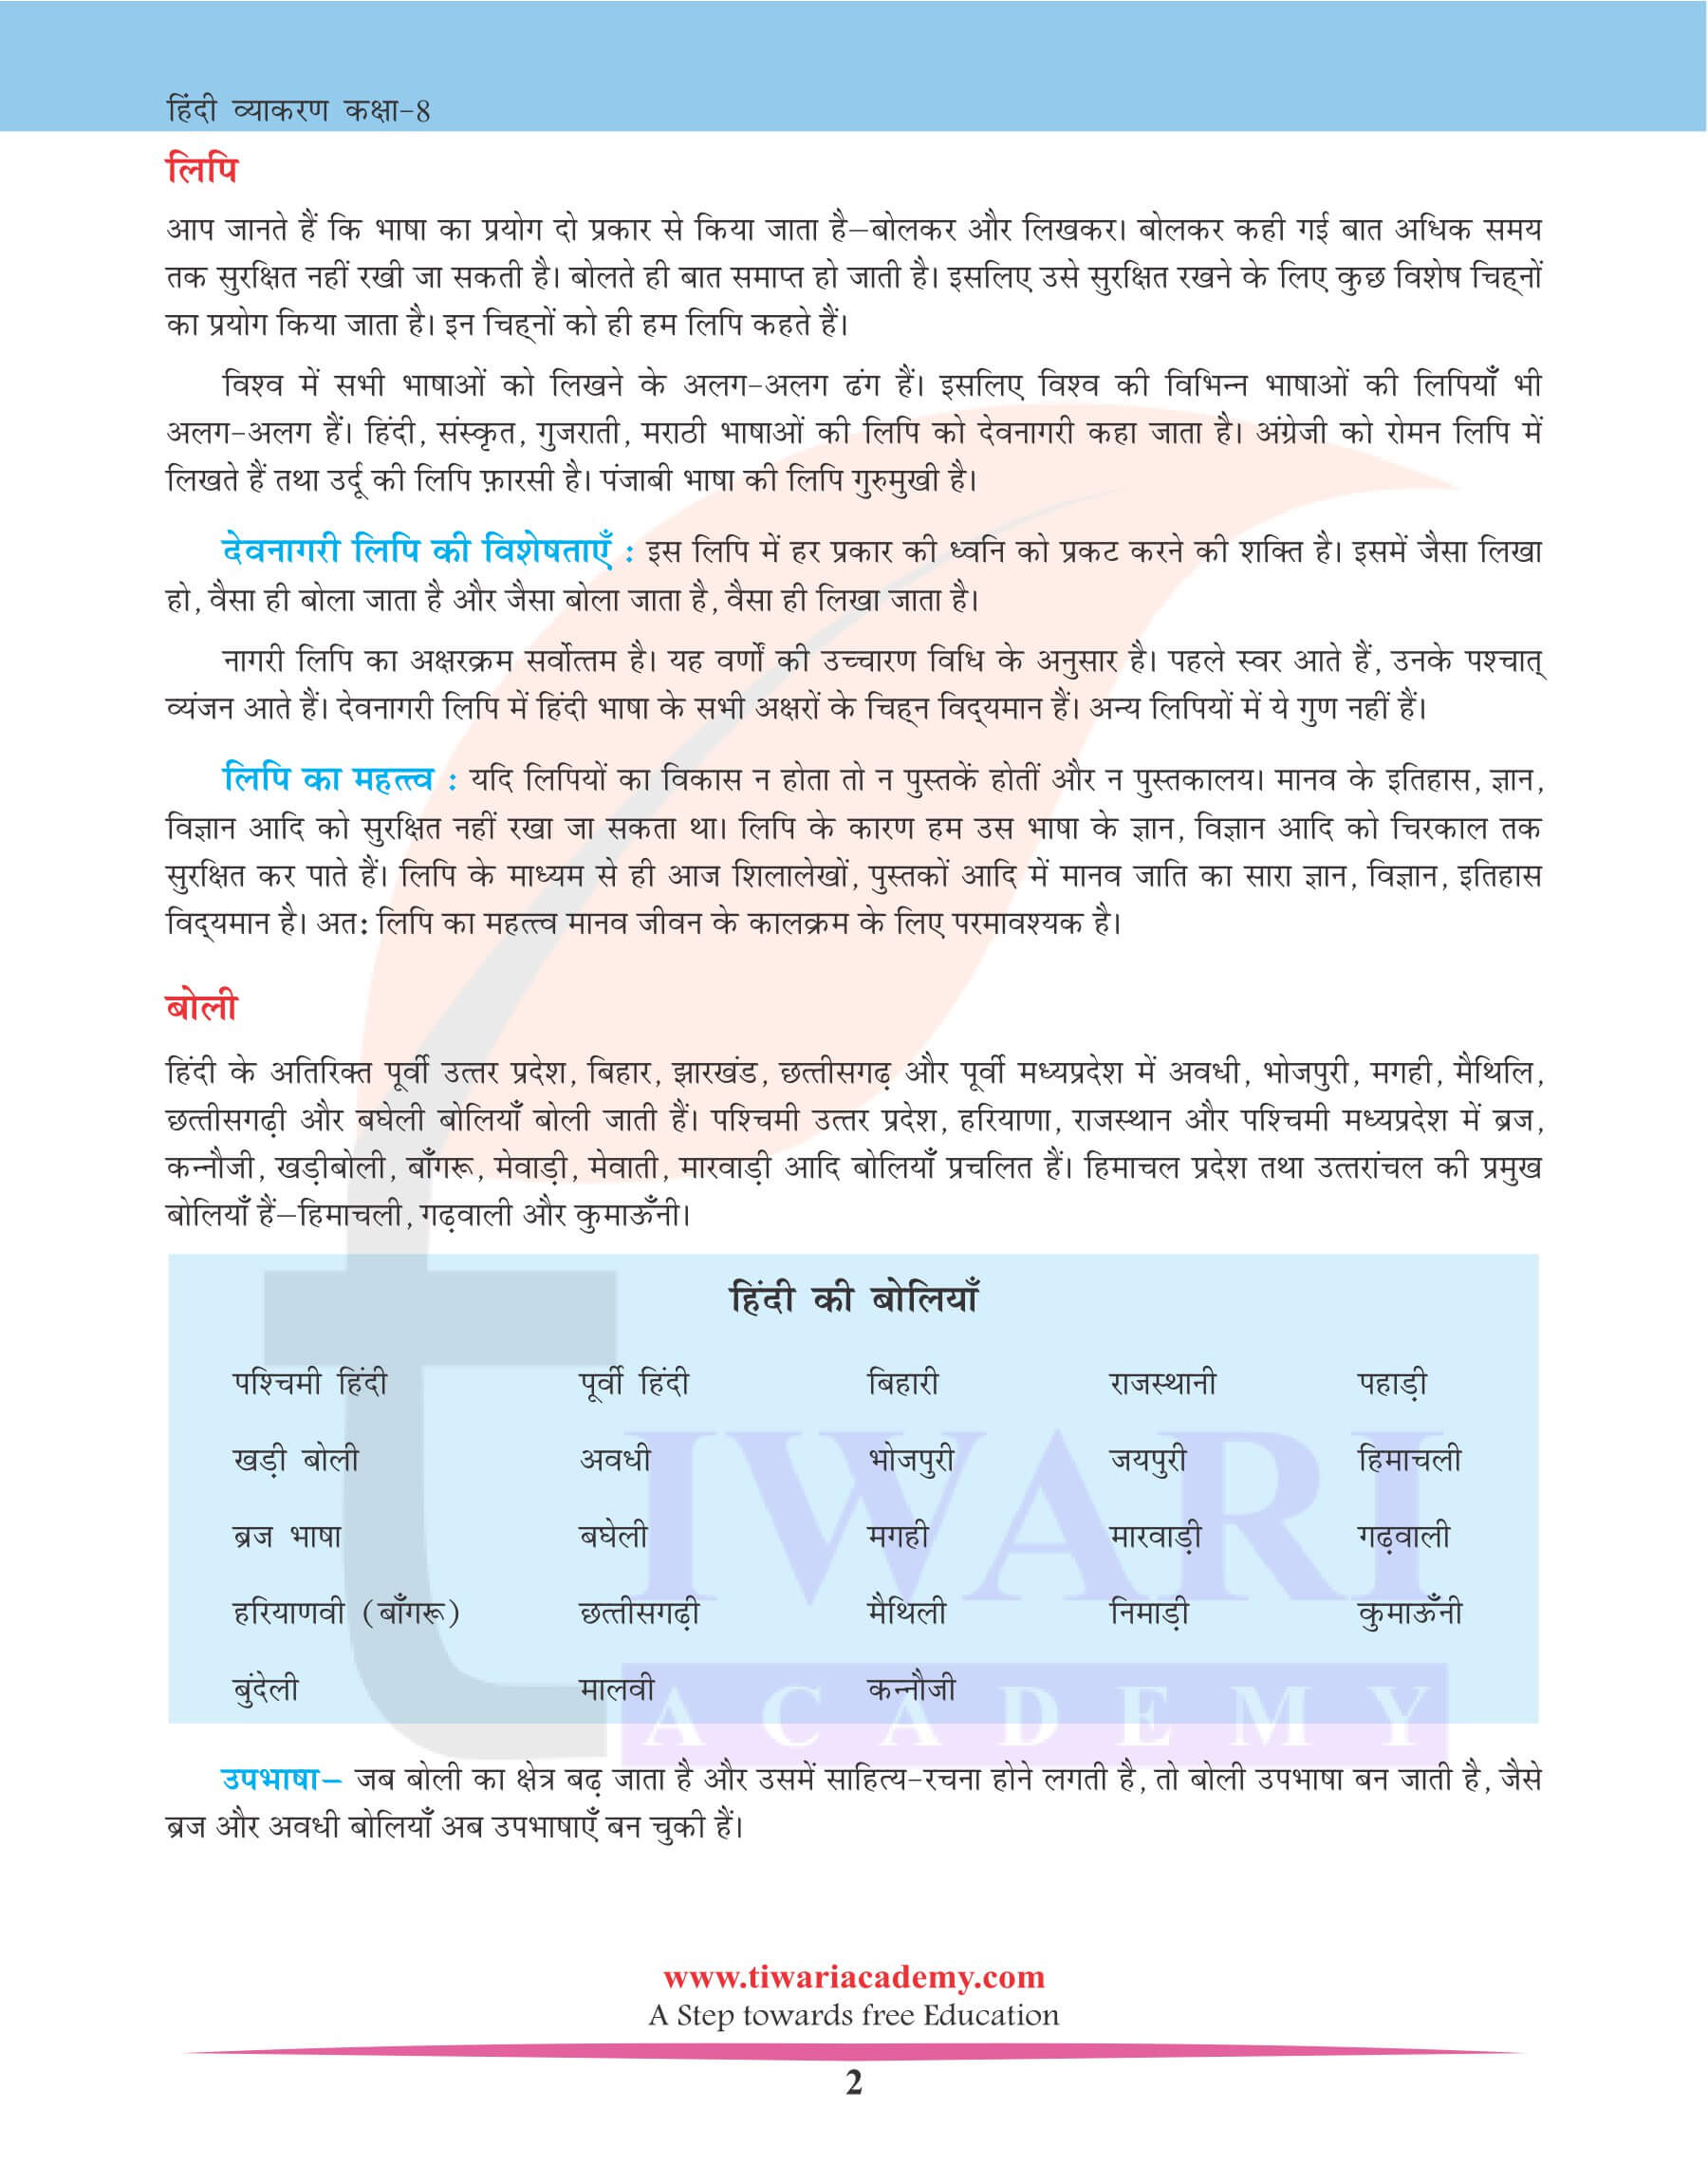 कक्षा 8 हिंदी व्याकरण पाठ 1 भाषा और व्याकरण